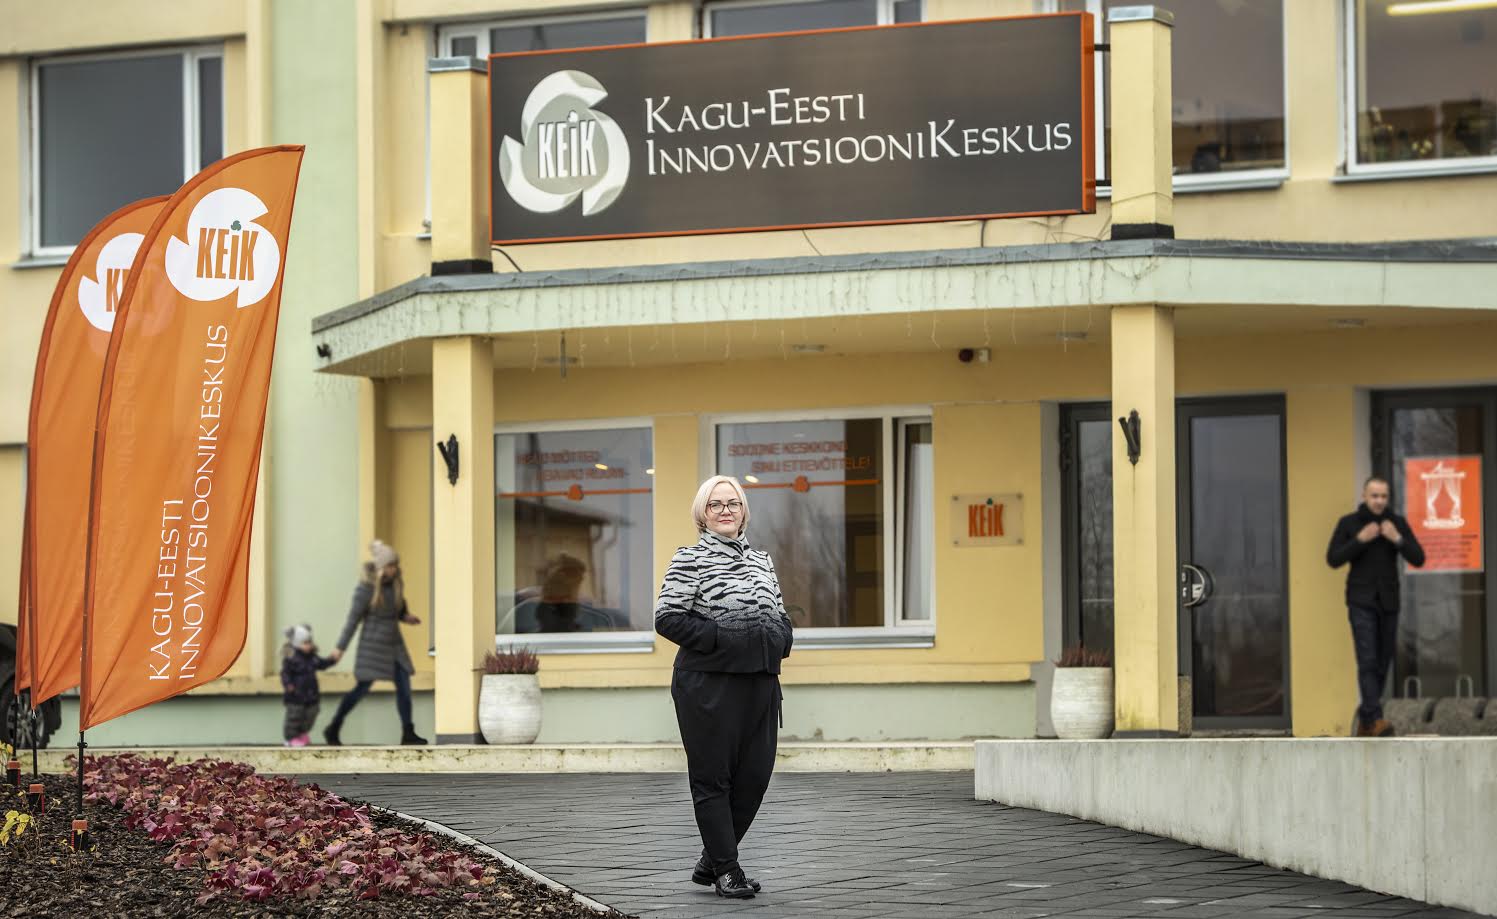 Kagu-Eesti innovatsioonikeskuse juhatuse liige Anita Hoole usub sügavalt Kagu-Eesti inimeste lennukatesse äriideedesse. Foto: AIGAR NAGEL